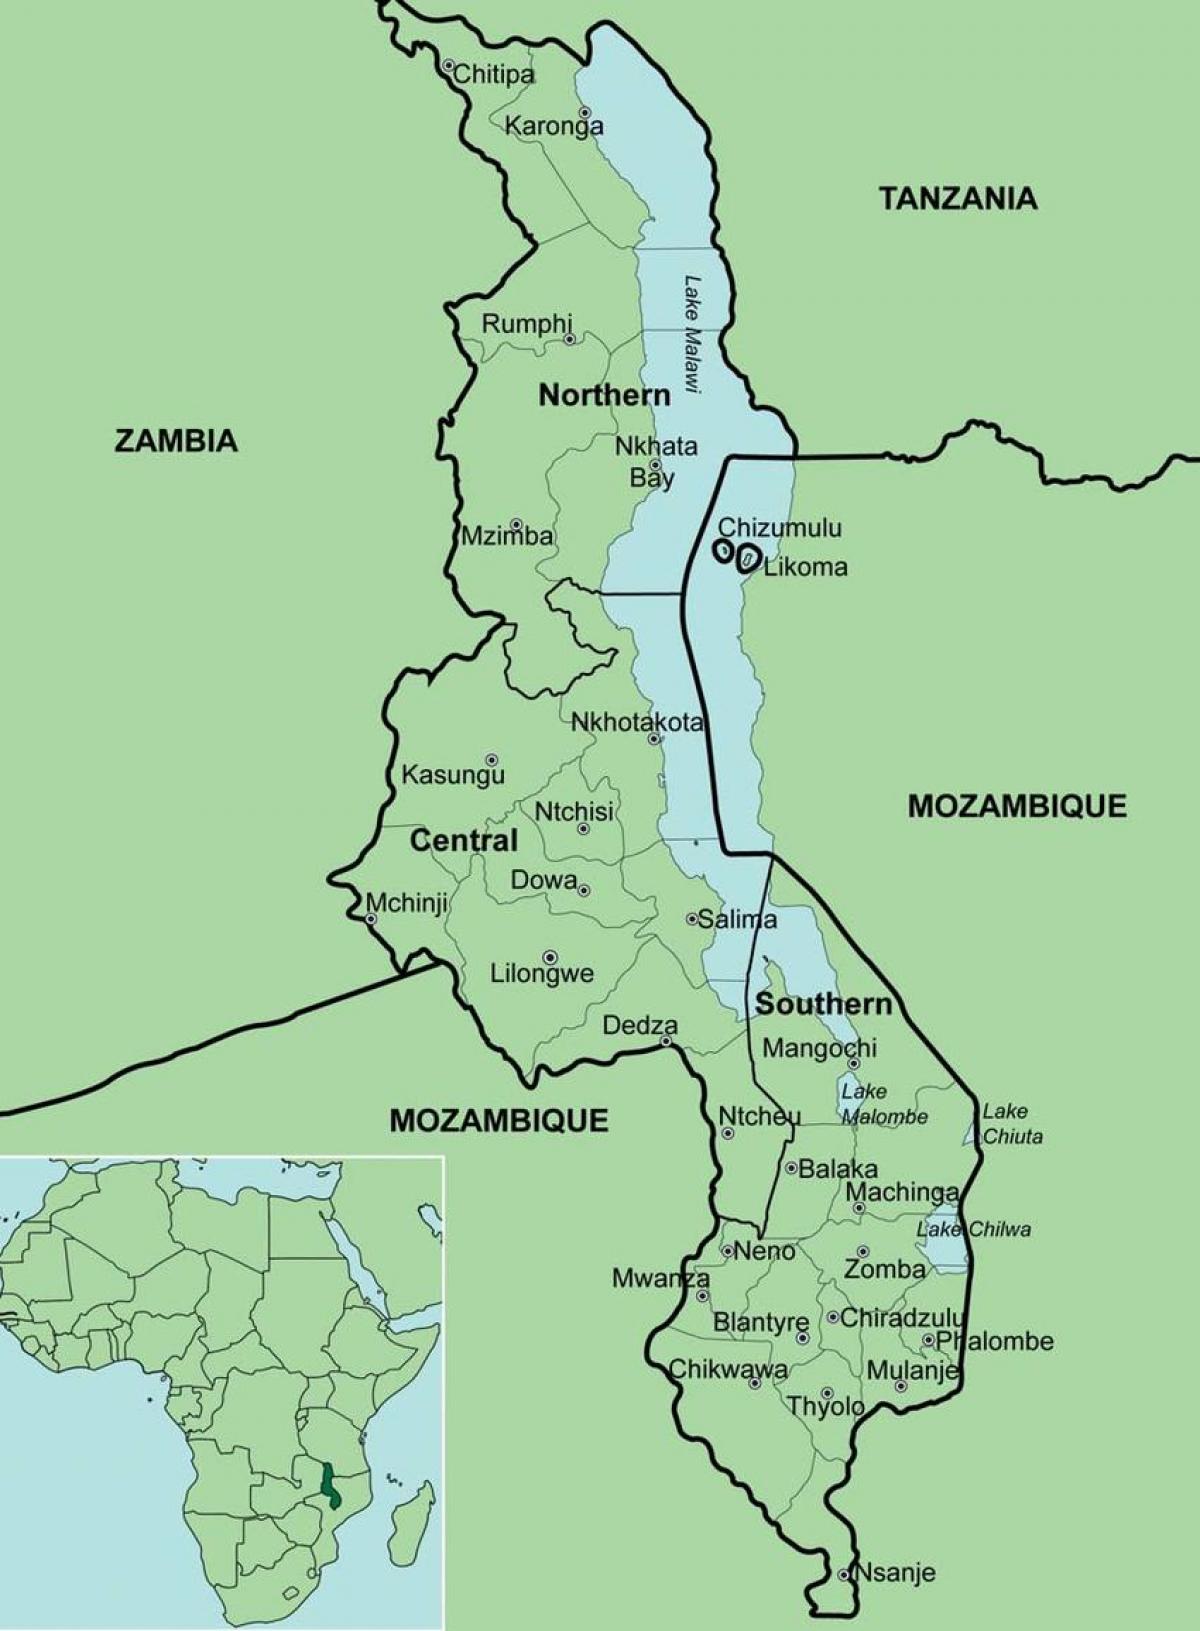 χάρτης του Μαλάουι δείχνει περιοχές